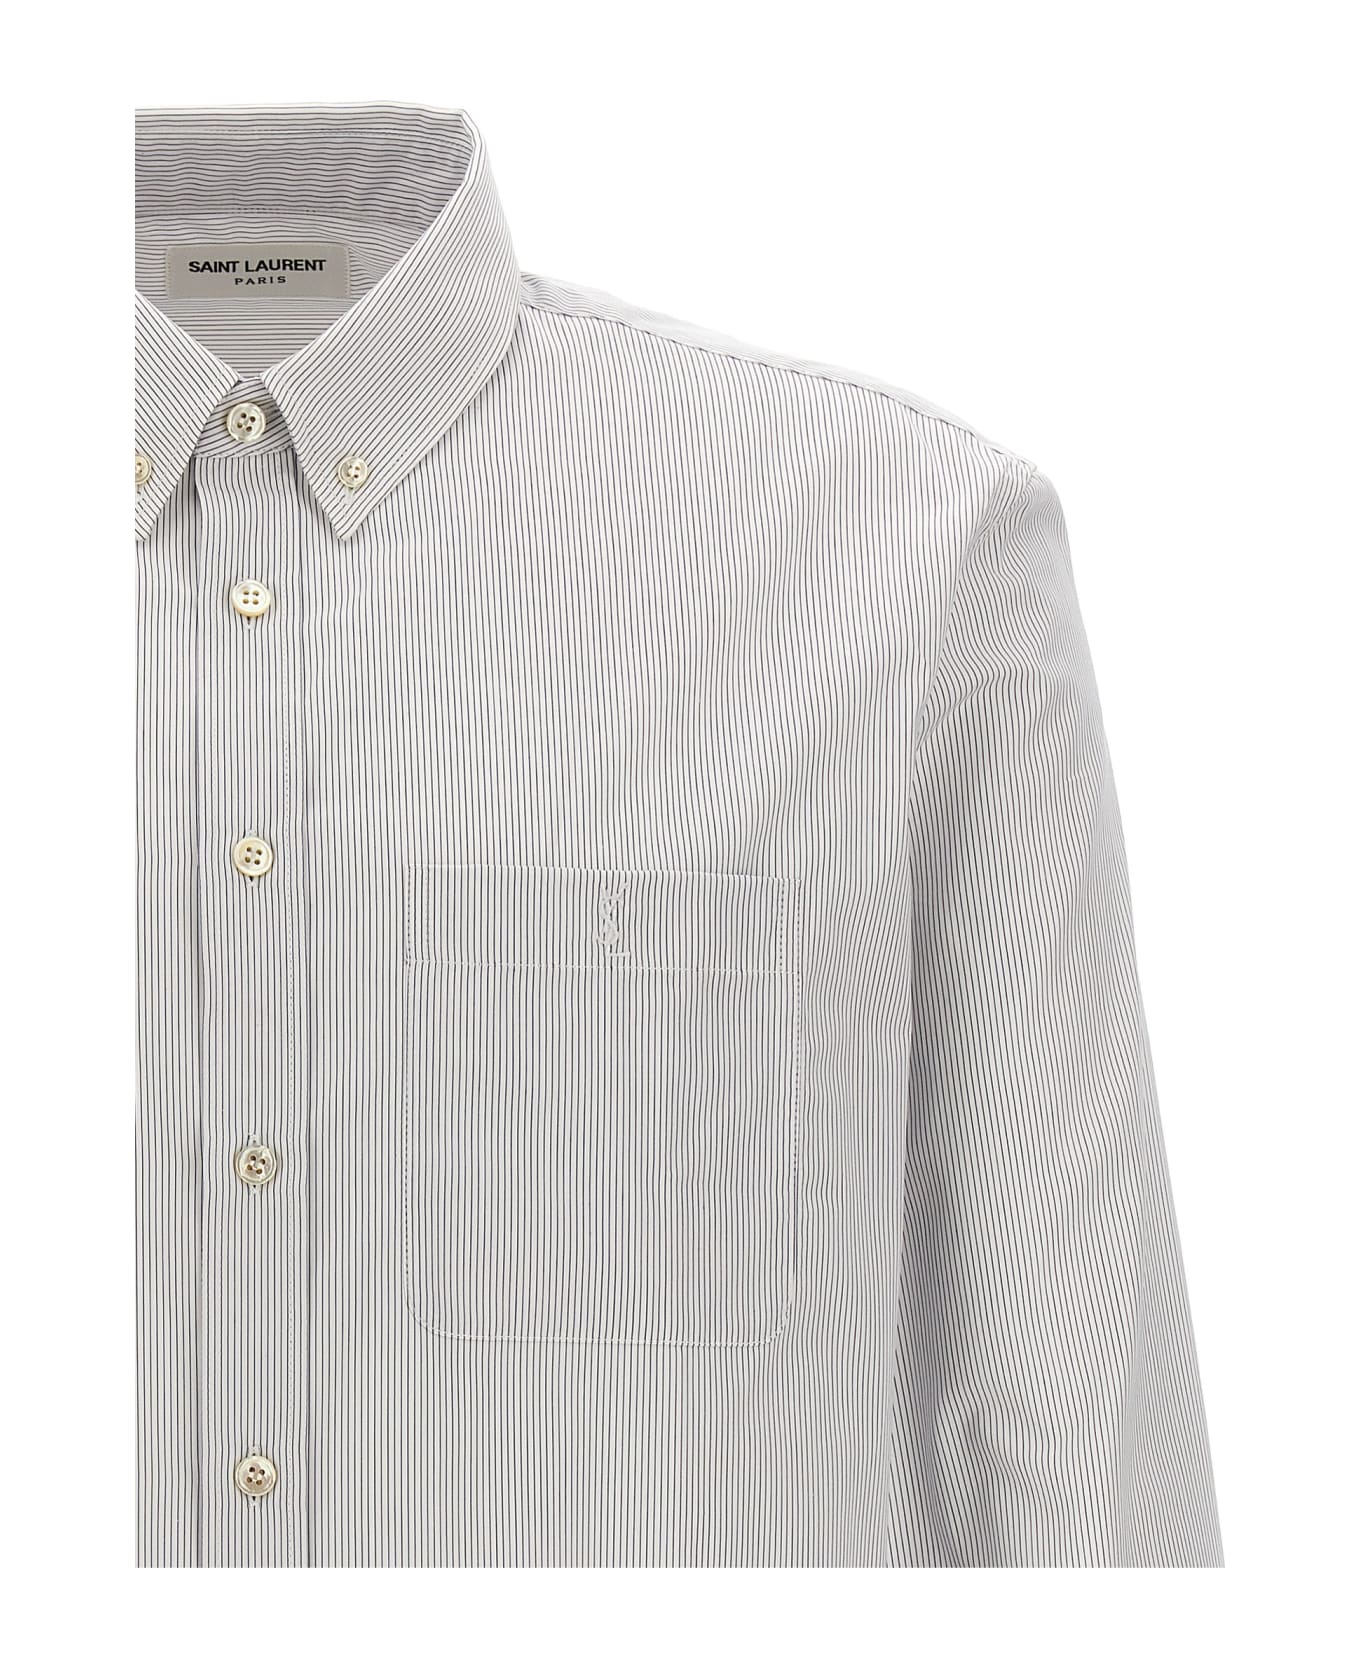 Saint Laurent Striped Cotton Shirt - WHITE/LIGHT BLUE